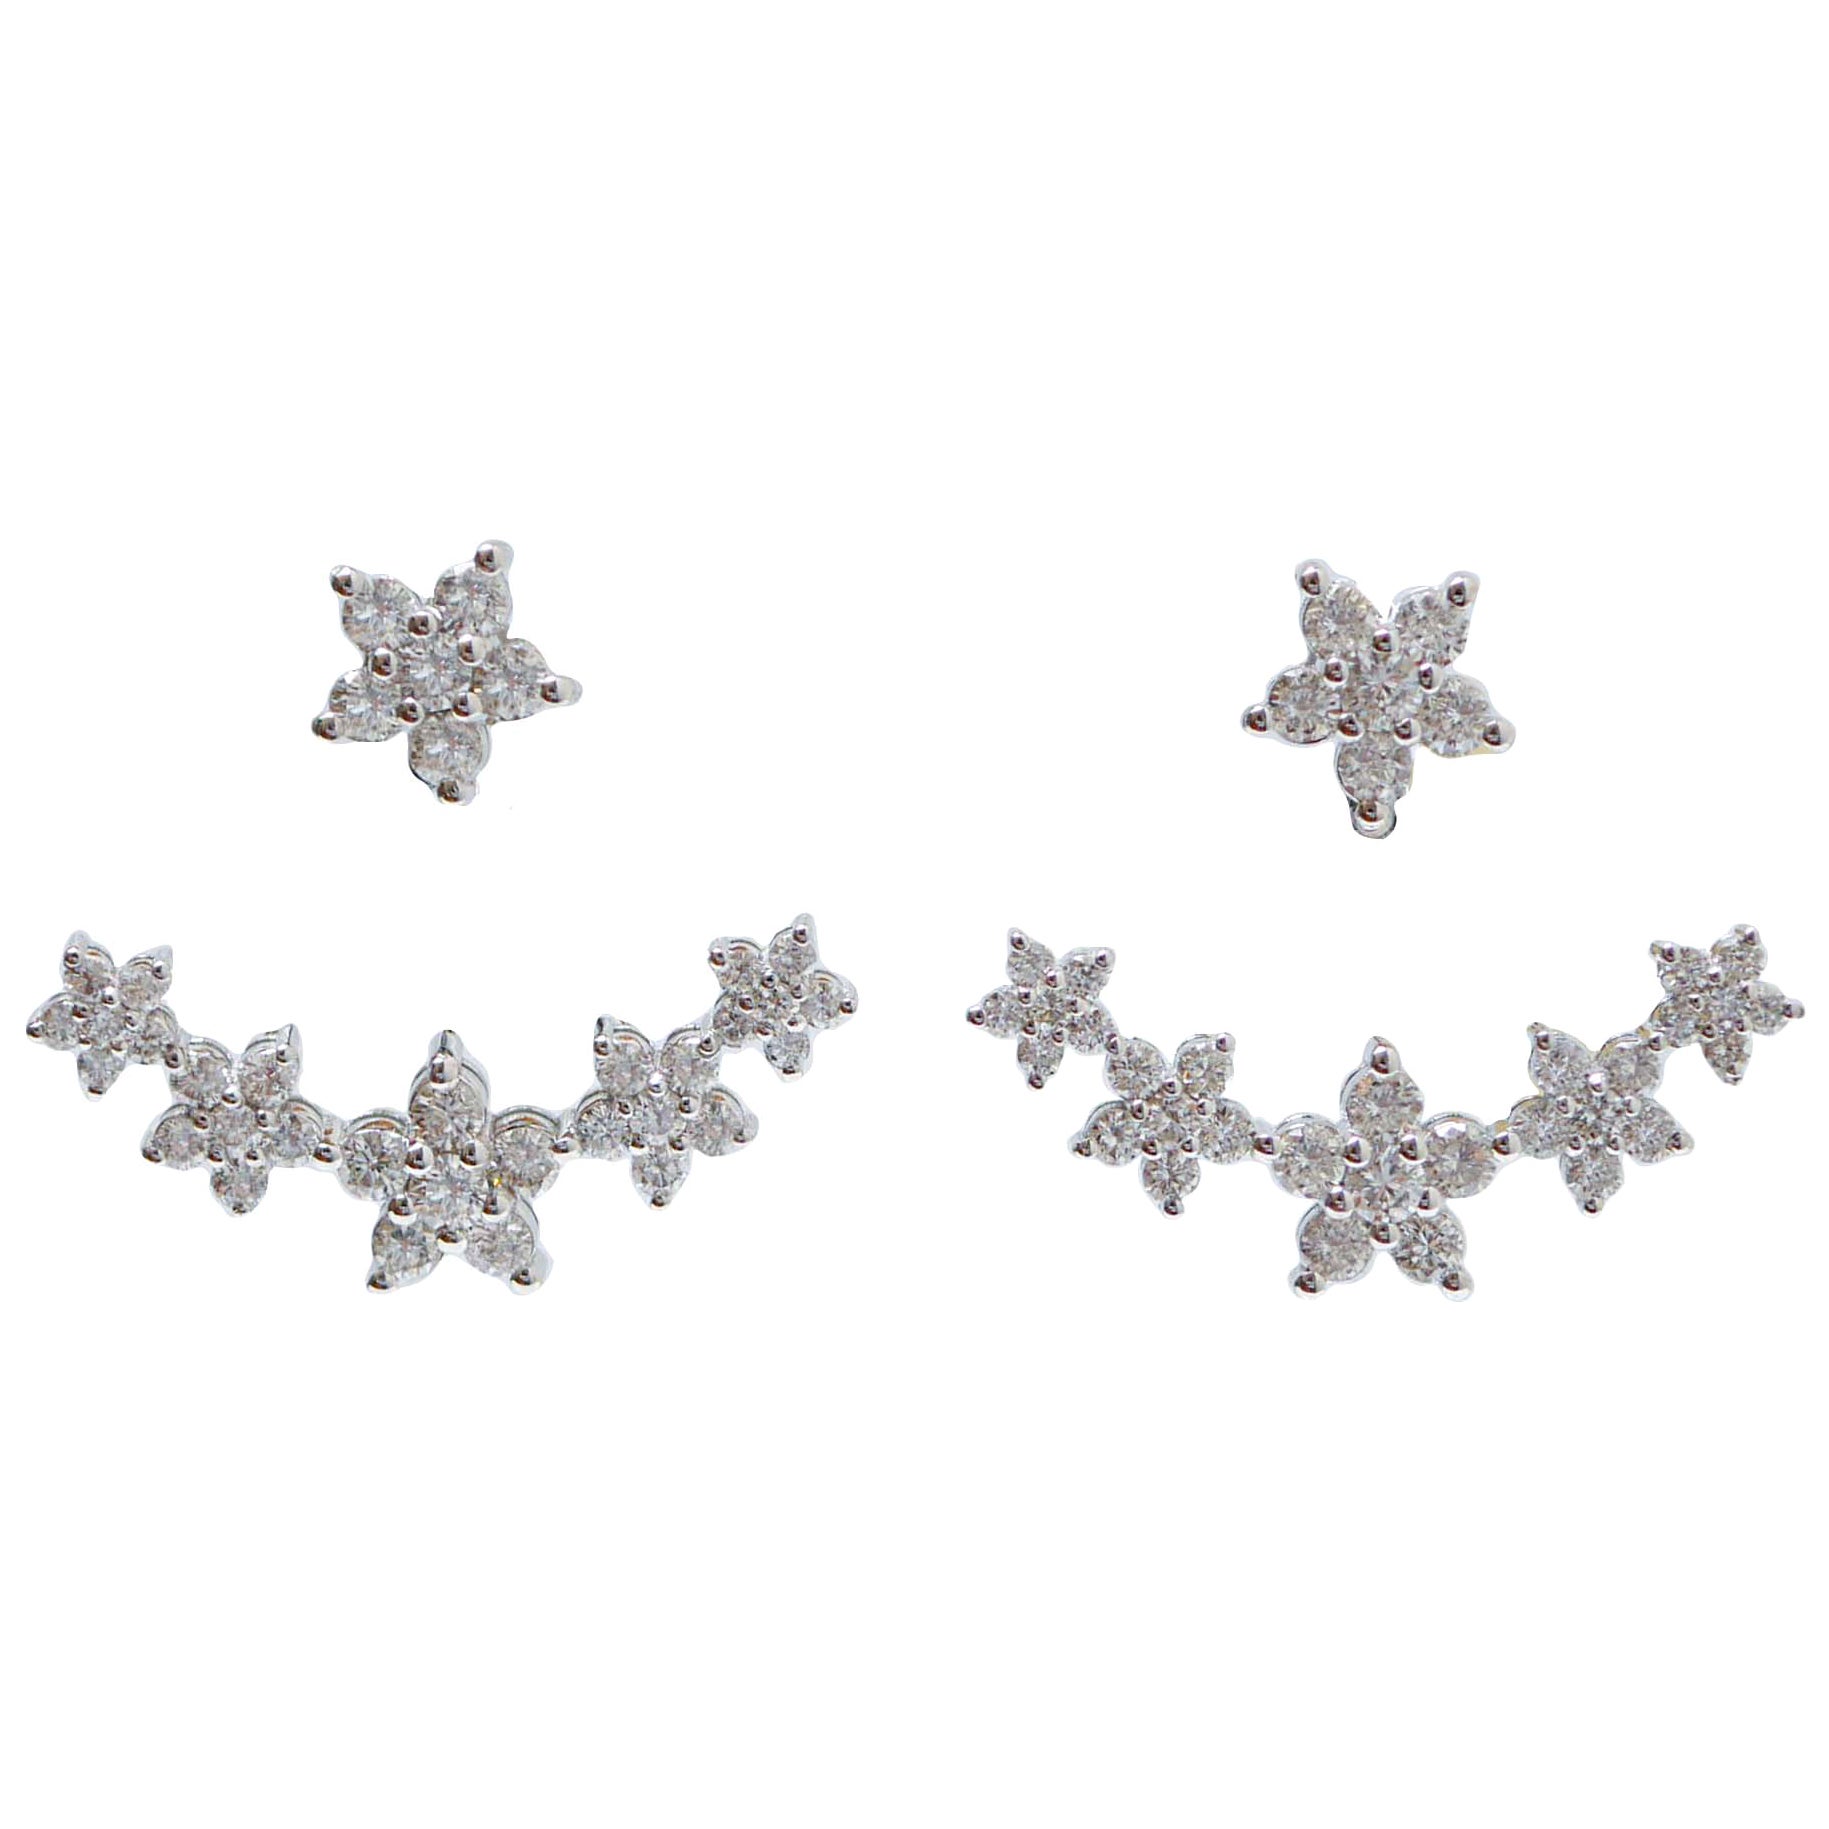 3.02 Diamonds, 18 Karat White Gold Modern Earrings